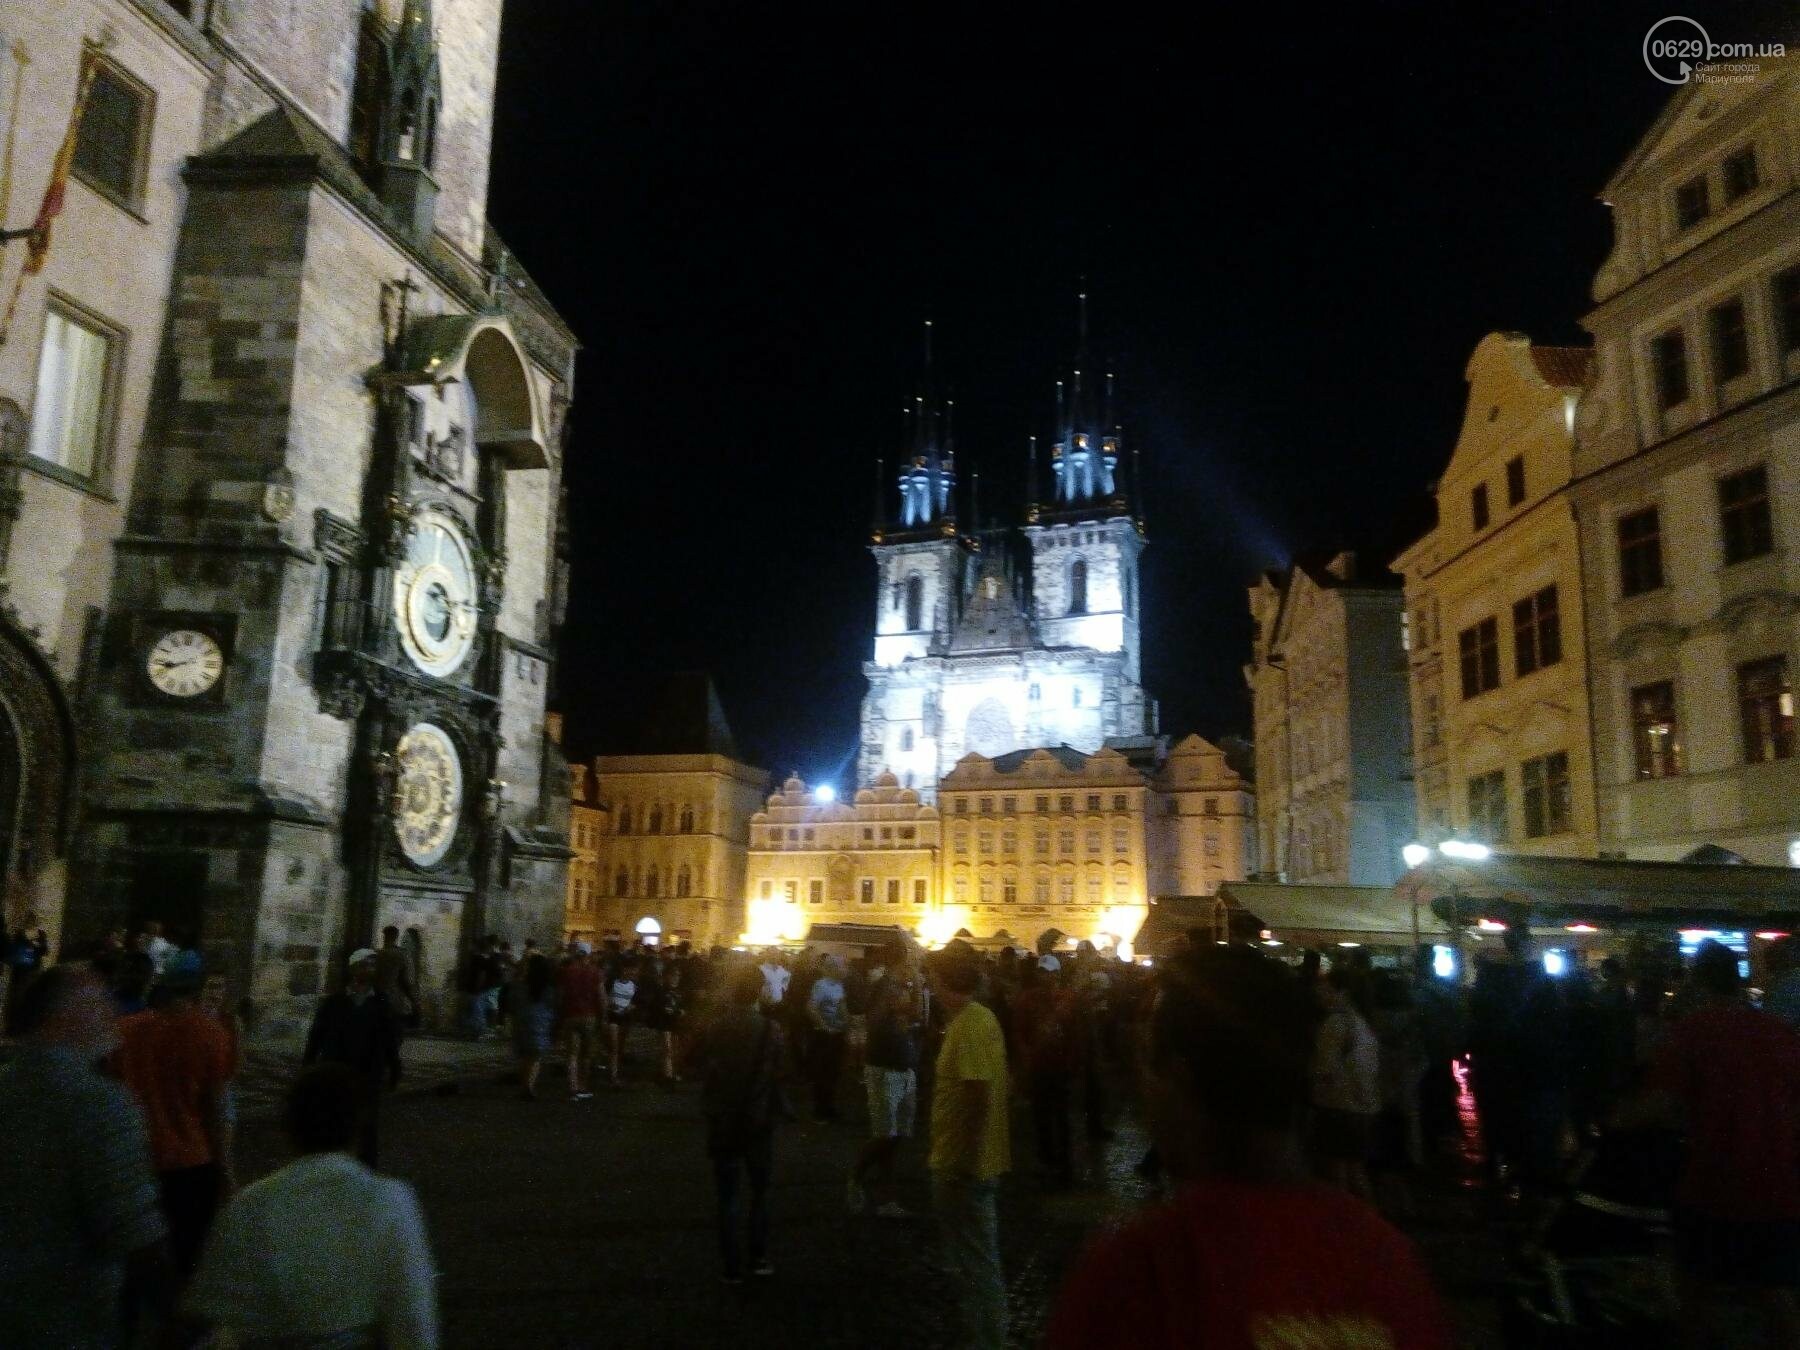 Город красных крыш. Как мариупольцам добраться в Прагу, что посмотреть, и сколько для этого нужно денег (ФОТО), фото-8